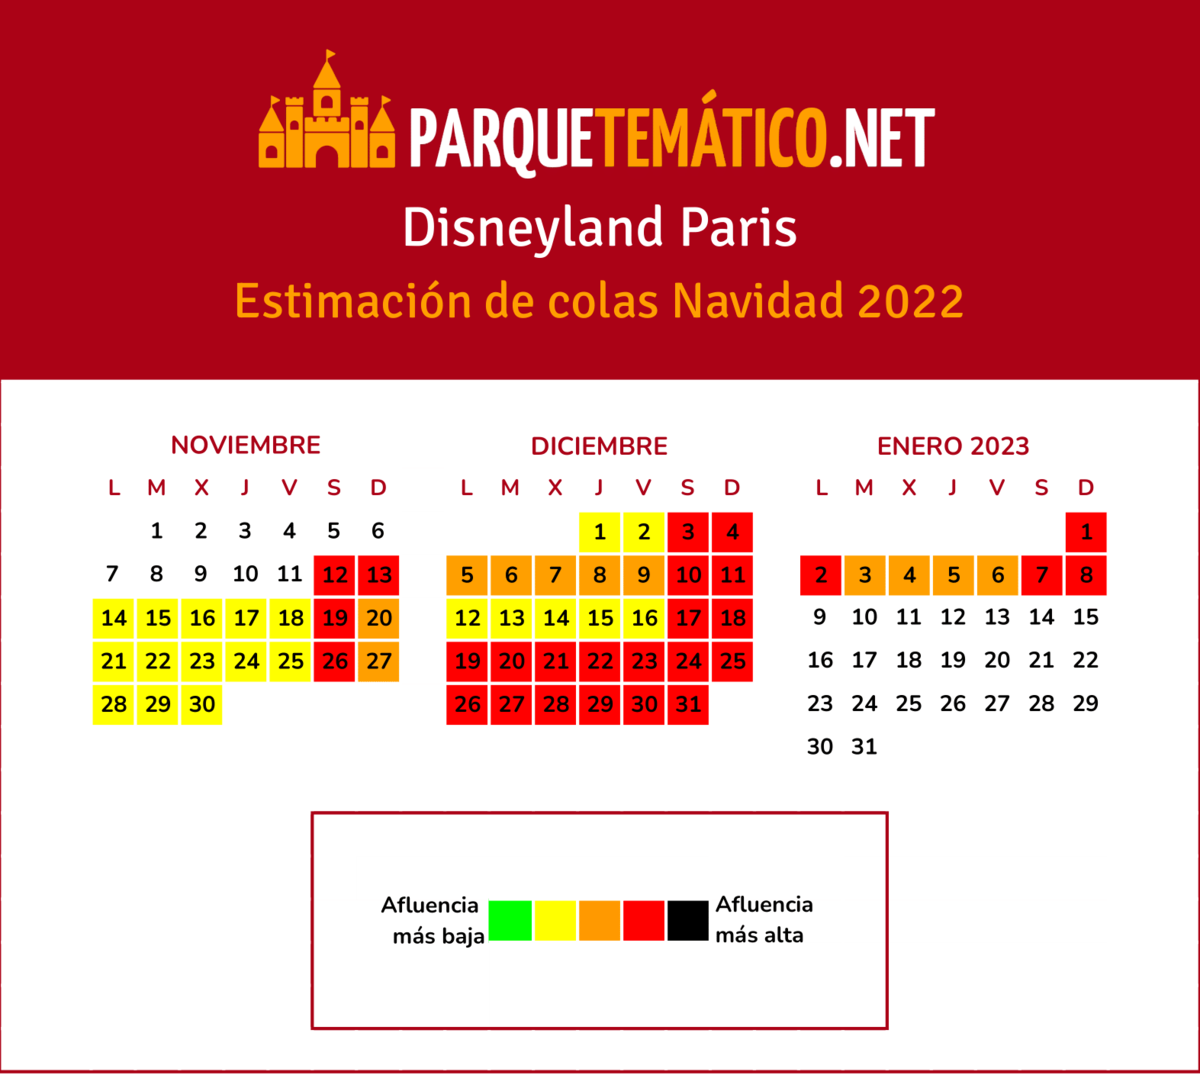 Calendario de estimación de afluencia Disneyland Paris navidad 2022 v3